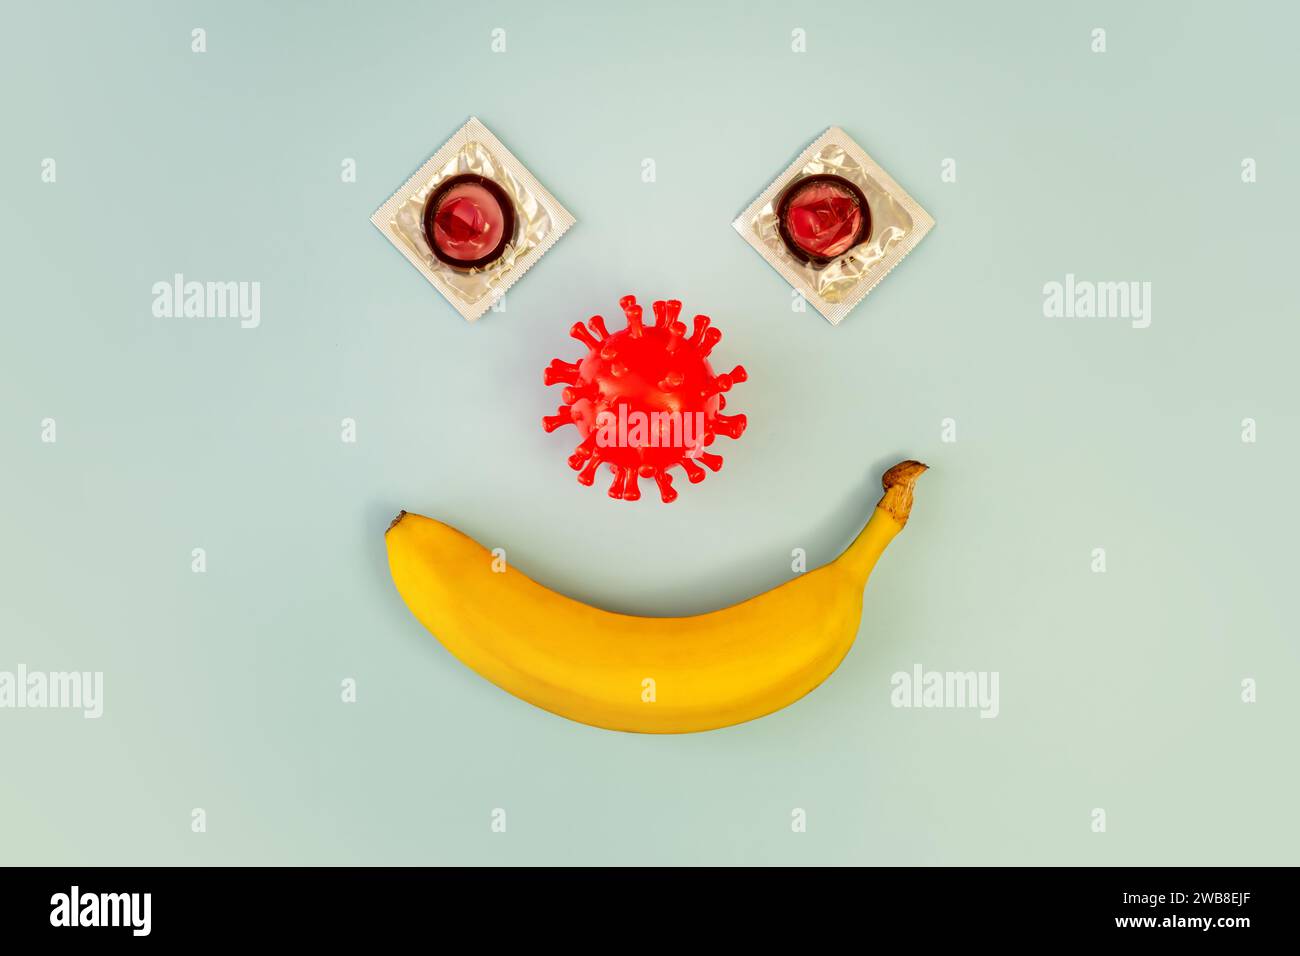 Préservatif sur une banane sur fond bleu, le concept de protection contre les maladies sexuellement transmissibles Banque D'Images